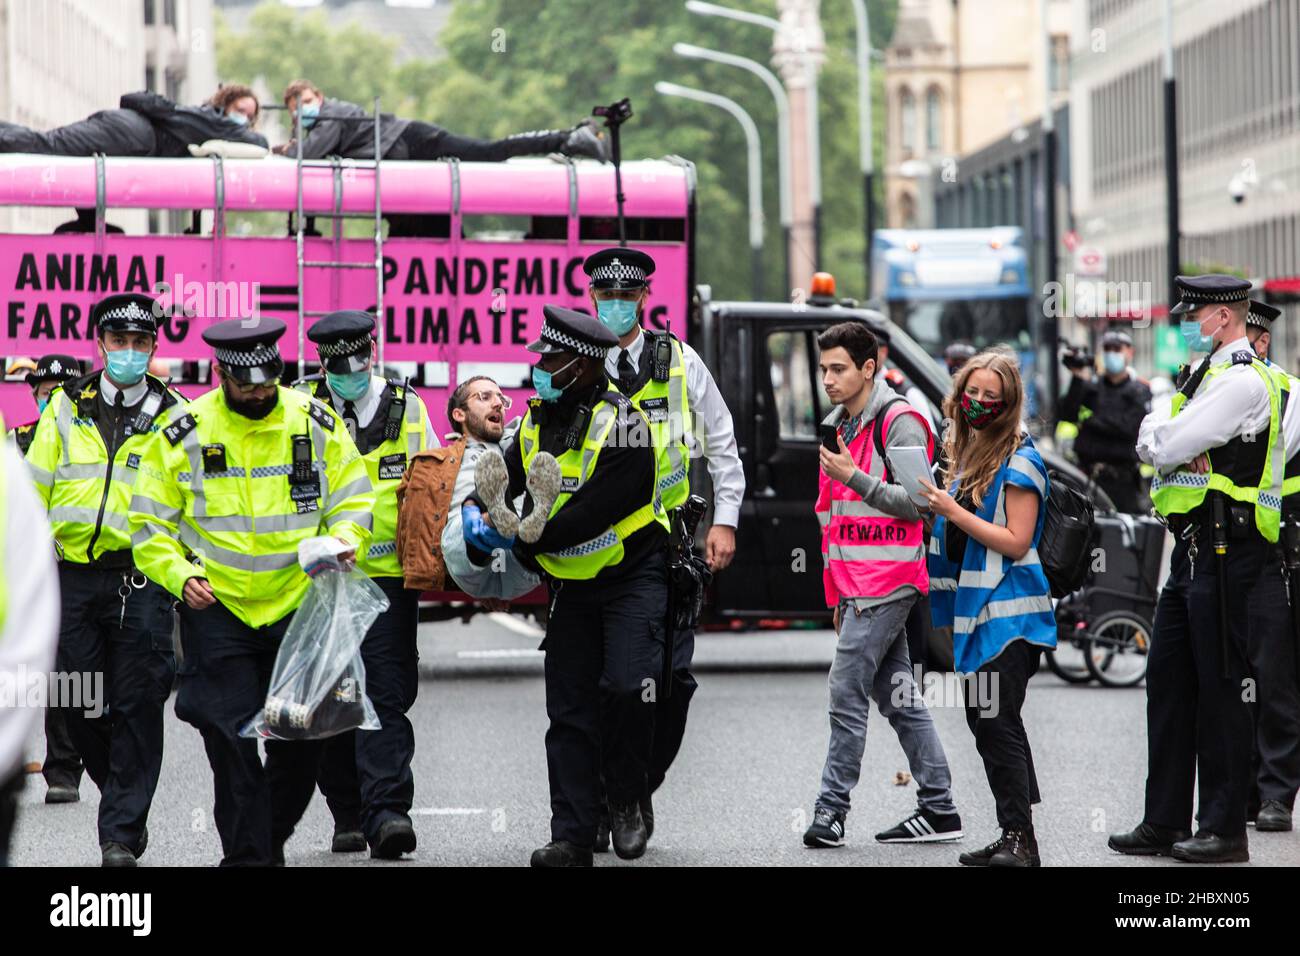 La police a arrêté le manifestant de la rébellion des animaux devant un camion rose avec un message contre l'élevage des animaux Londres 2020 Banque D'Images